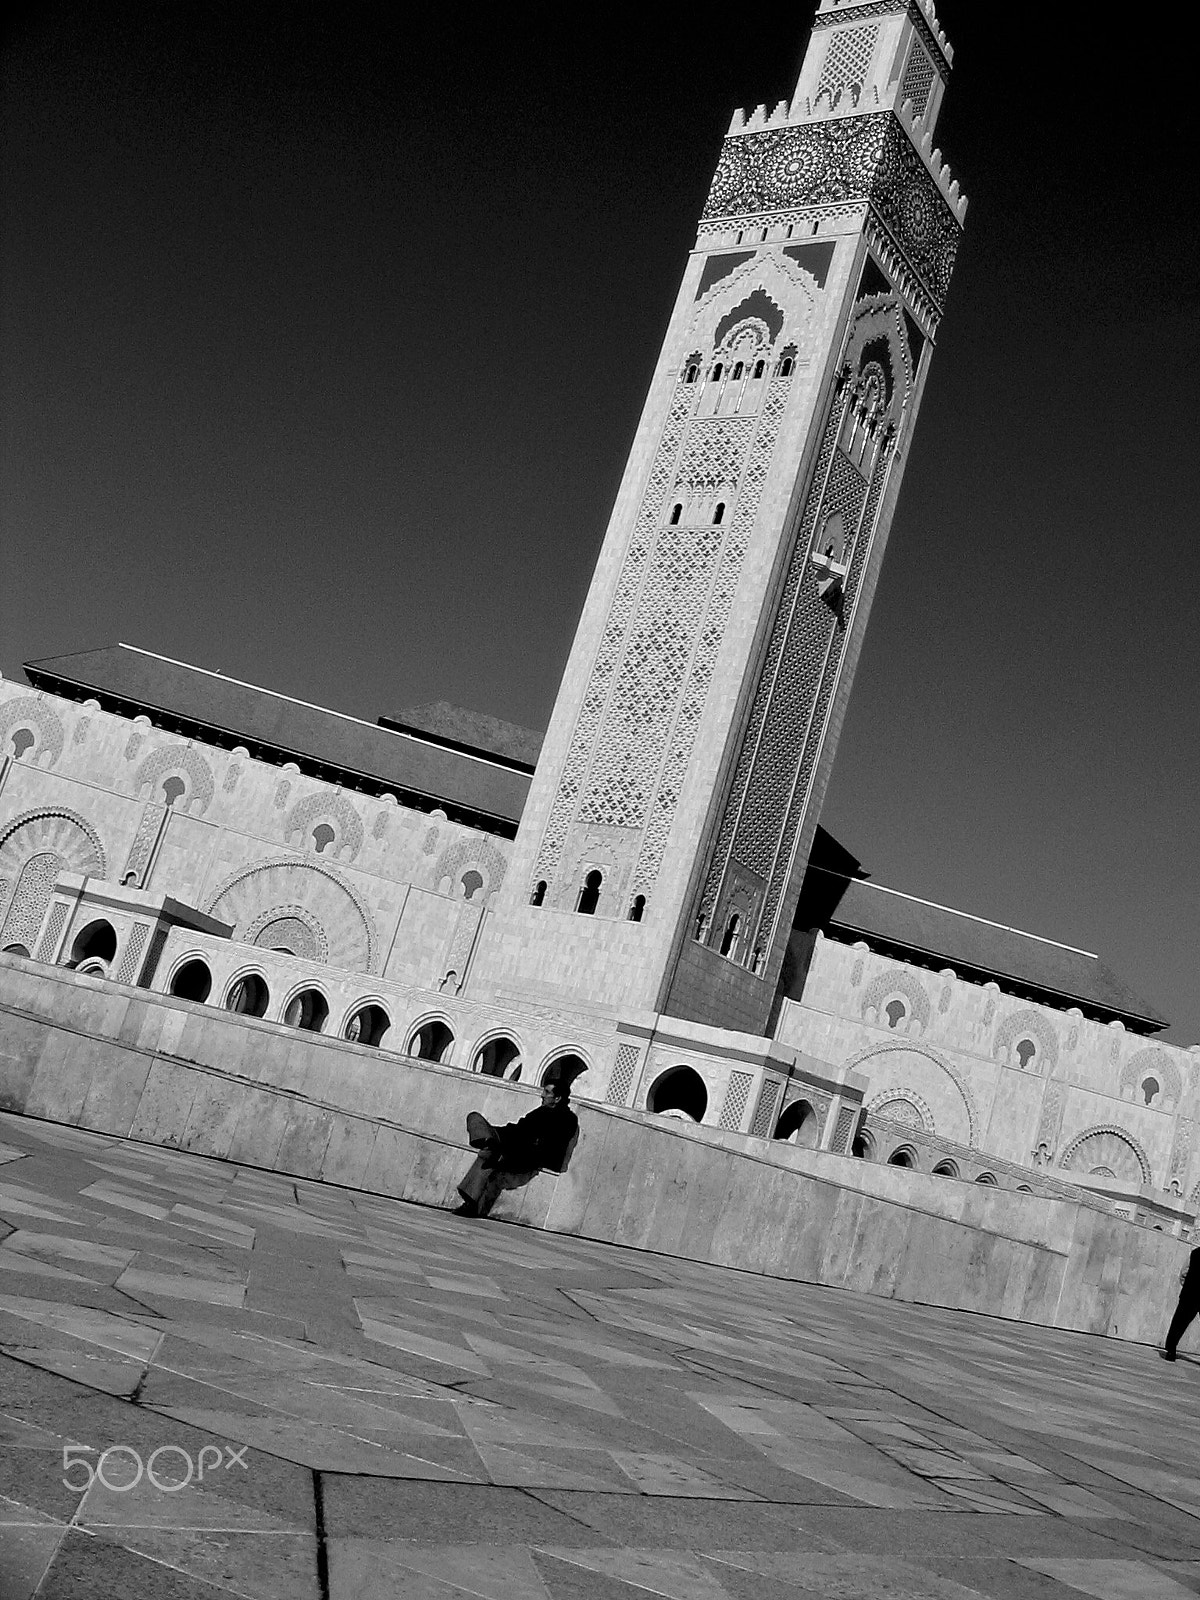 Canon POWERSHOT A75 sample photo. Casablanca photography